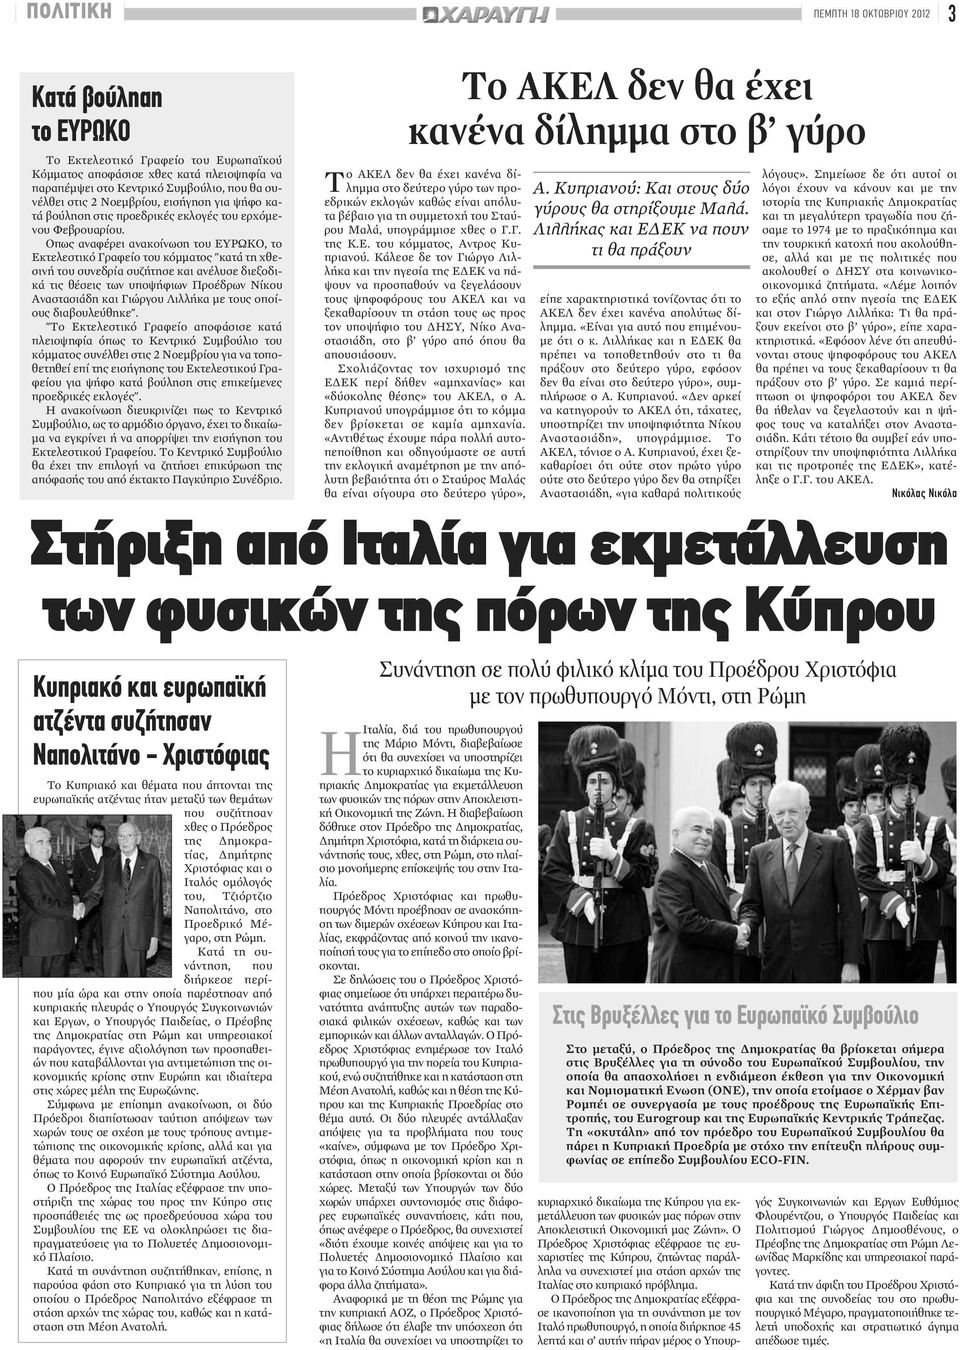 Οπως αναφέρει ανακοίνωση του ΕΥΡΩΚΟ, το Εκτελεστικό Γραφείο του κόμματος "κατά τη χθεσινή του συνεδρία συζήτησε και ανέλυσε διεξοδικά τις θέσεις των υποψήφιων Προέδρων Νίκου Αναστασιάδη και Γιώργου